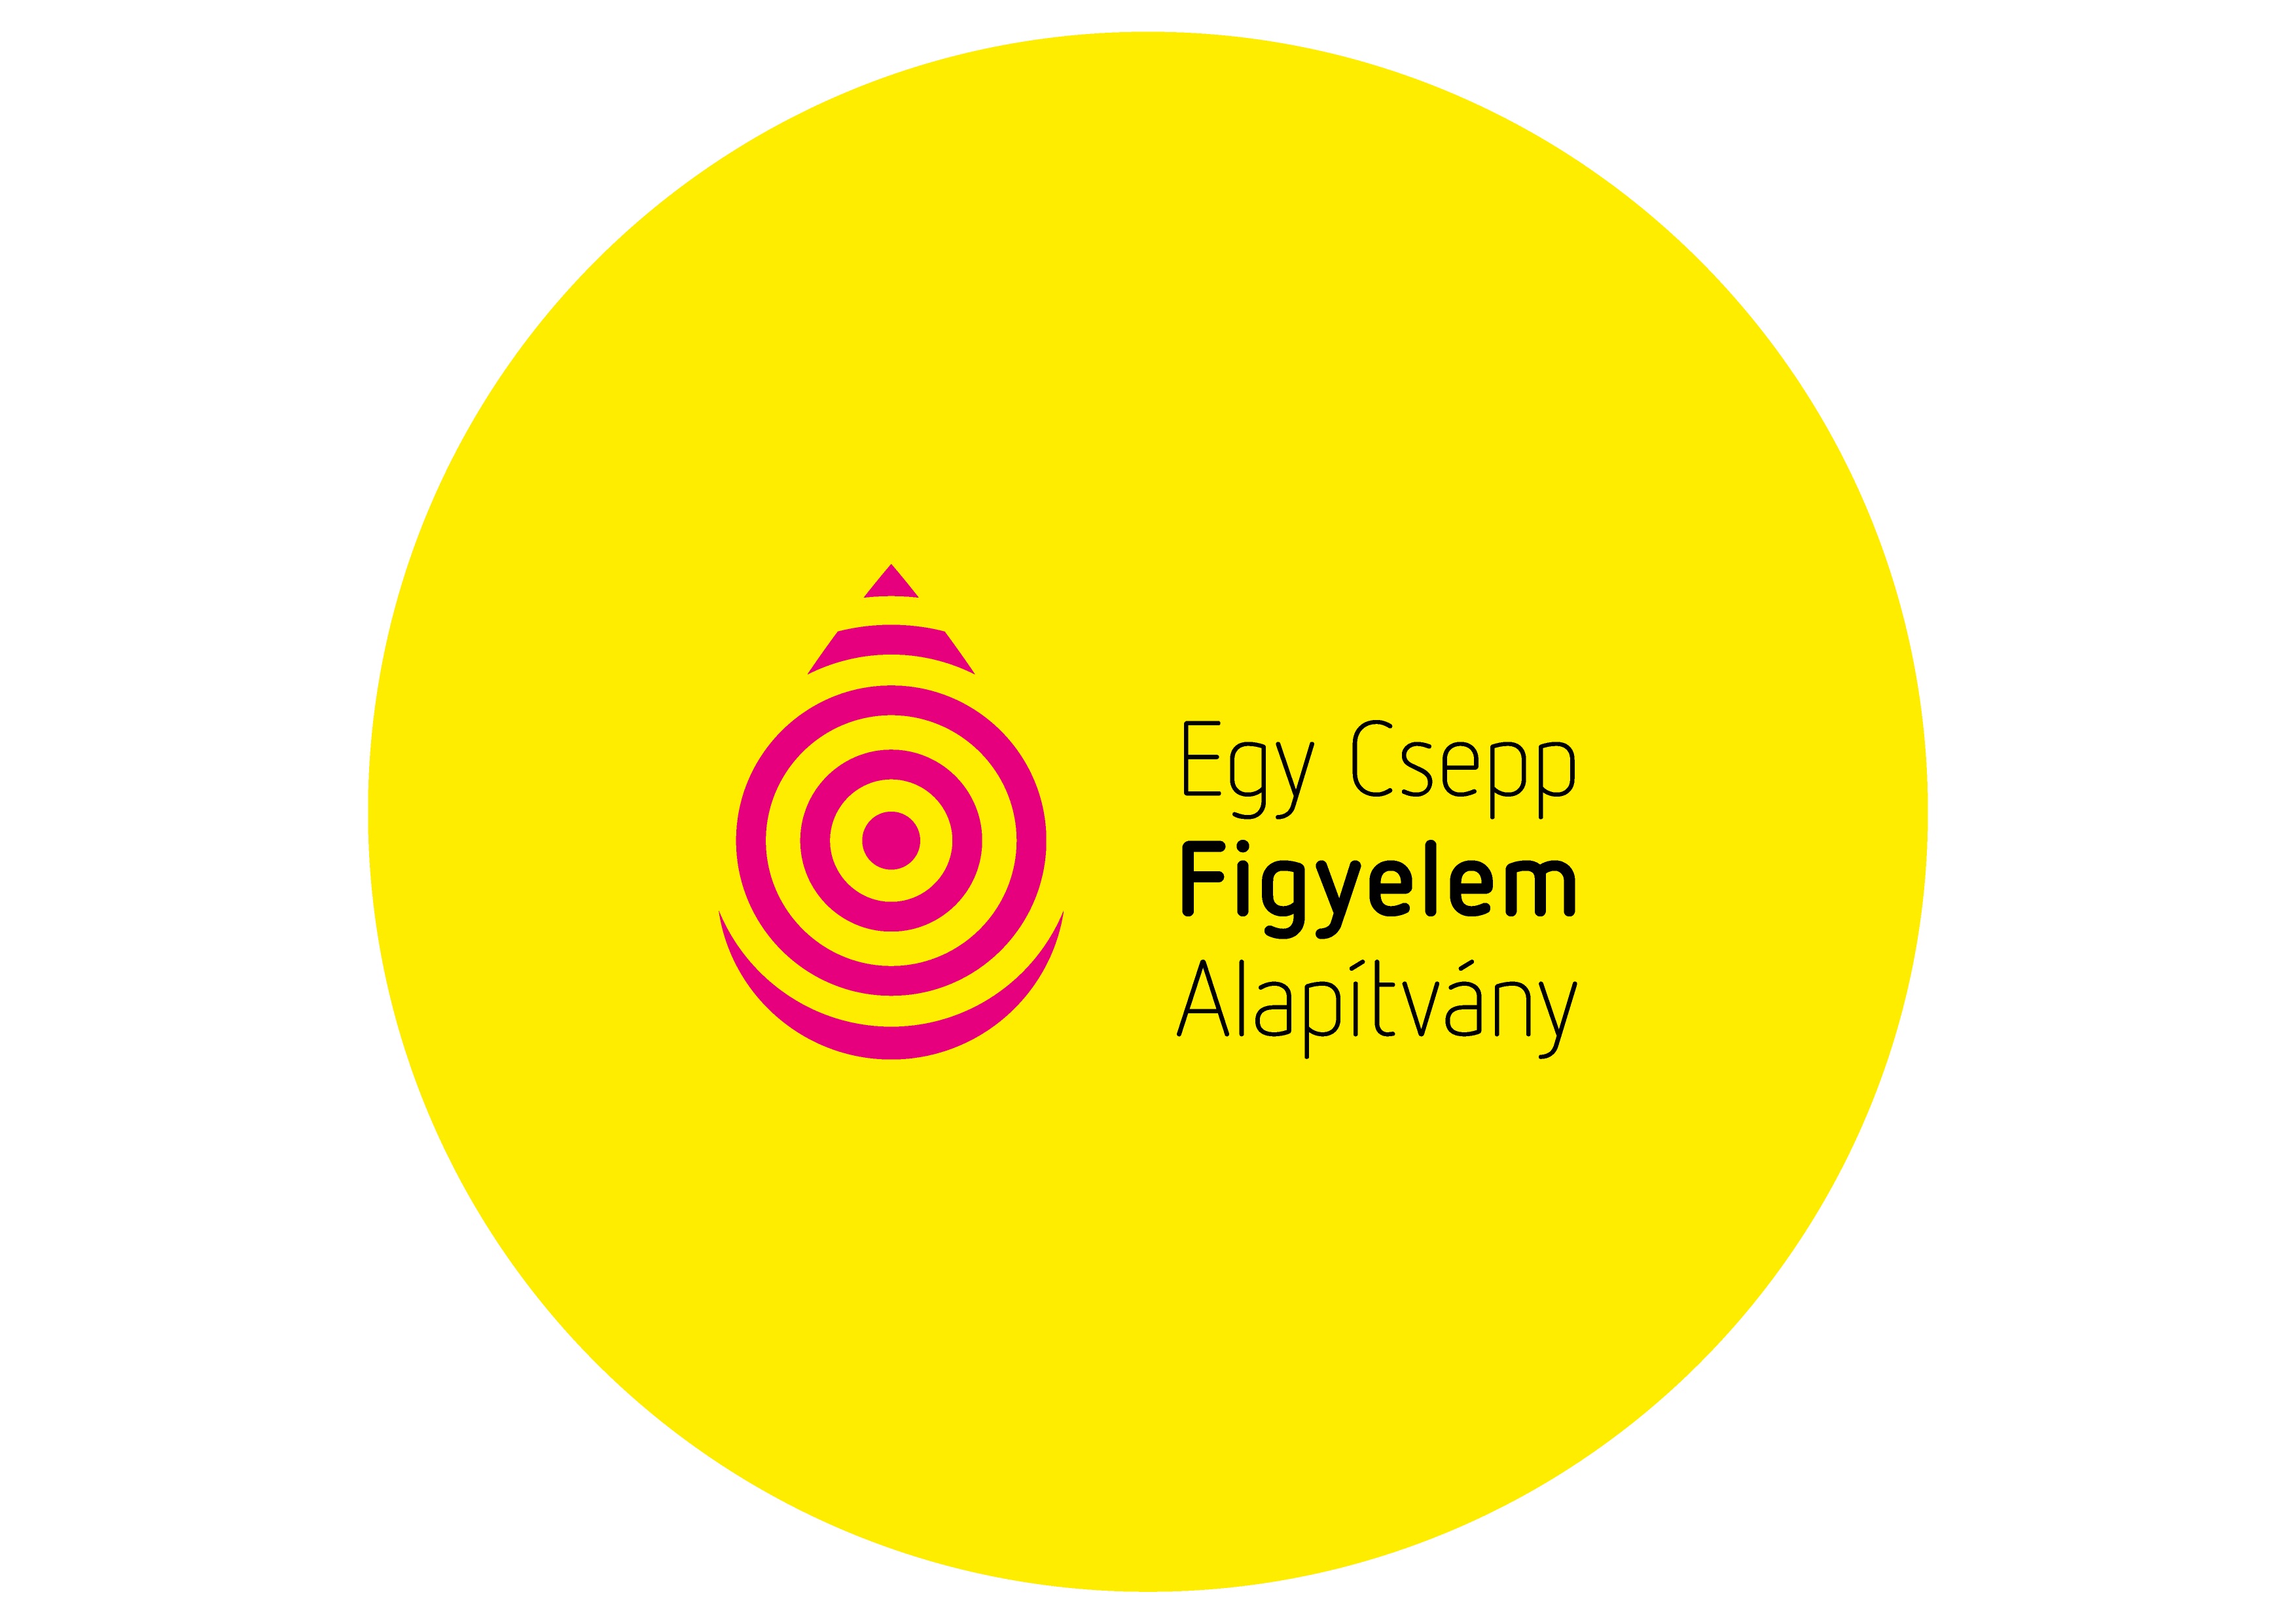 egy csepp logo frissitett yellow circle 2